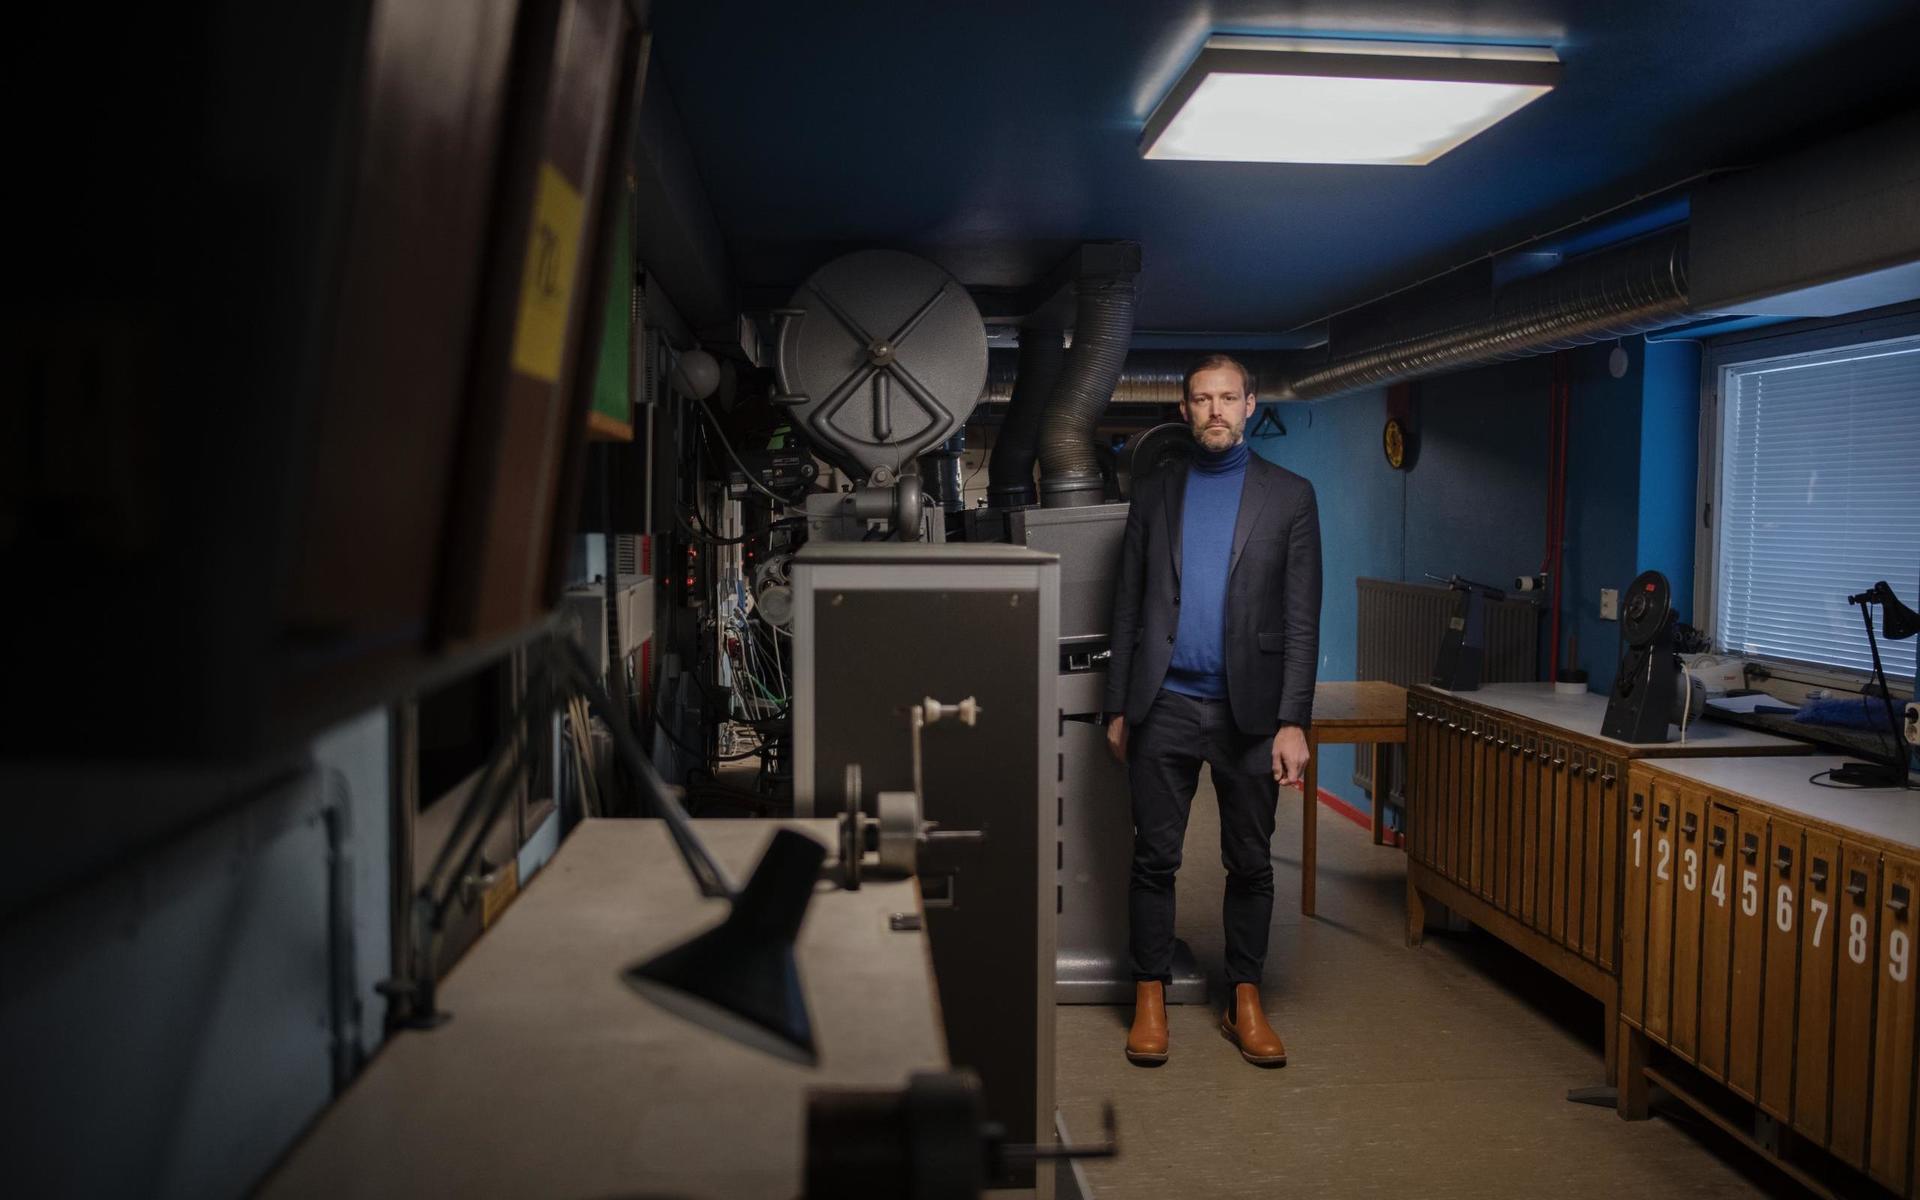 Det sitter mycket filmhistoria i väggarna här: i maskinrummet på biografen Draken. Men pandemin kan få ”oåterkalleliga konsekvenser” för filmen och dess framtid, menar Jonas Holmberg, konstnärligt ledare för Göteborgs filmfestival.